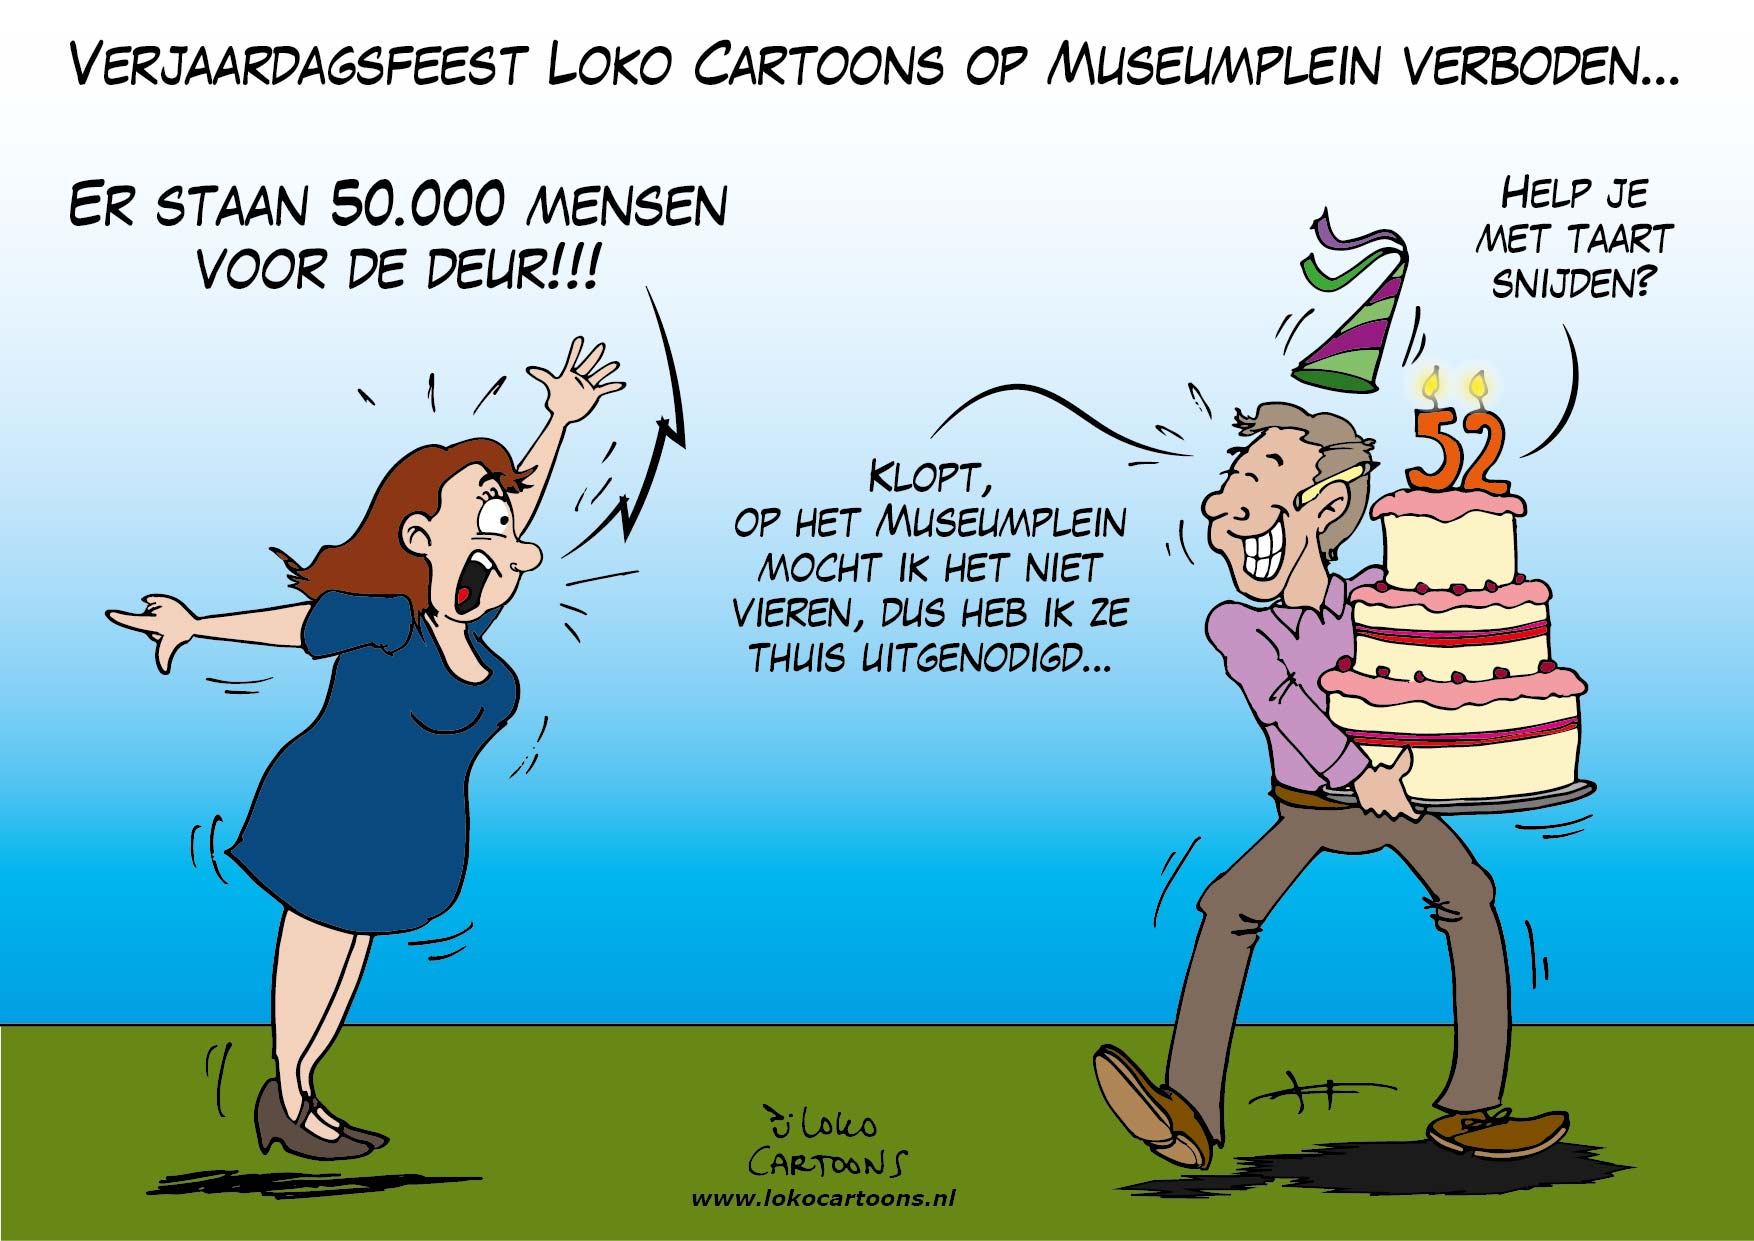 Verjaardagsfeest Loko Cartoons op Museumplein verboden…